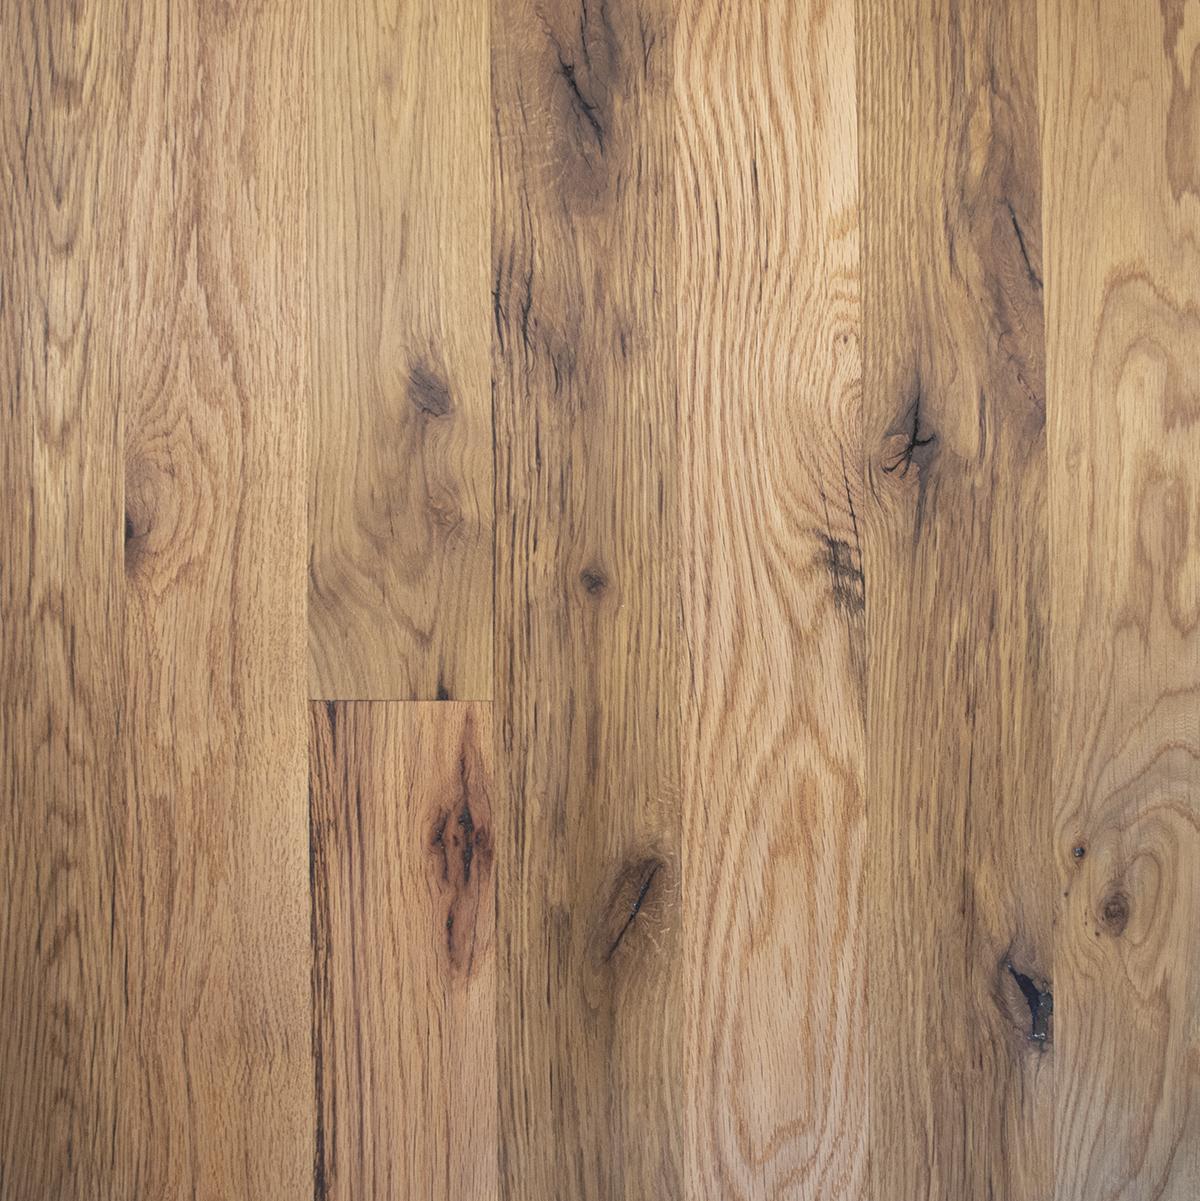 Reclaimed Oak Flooring & Paneling, BLACK & TAN—TAN OAK